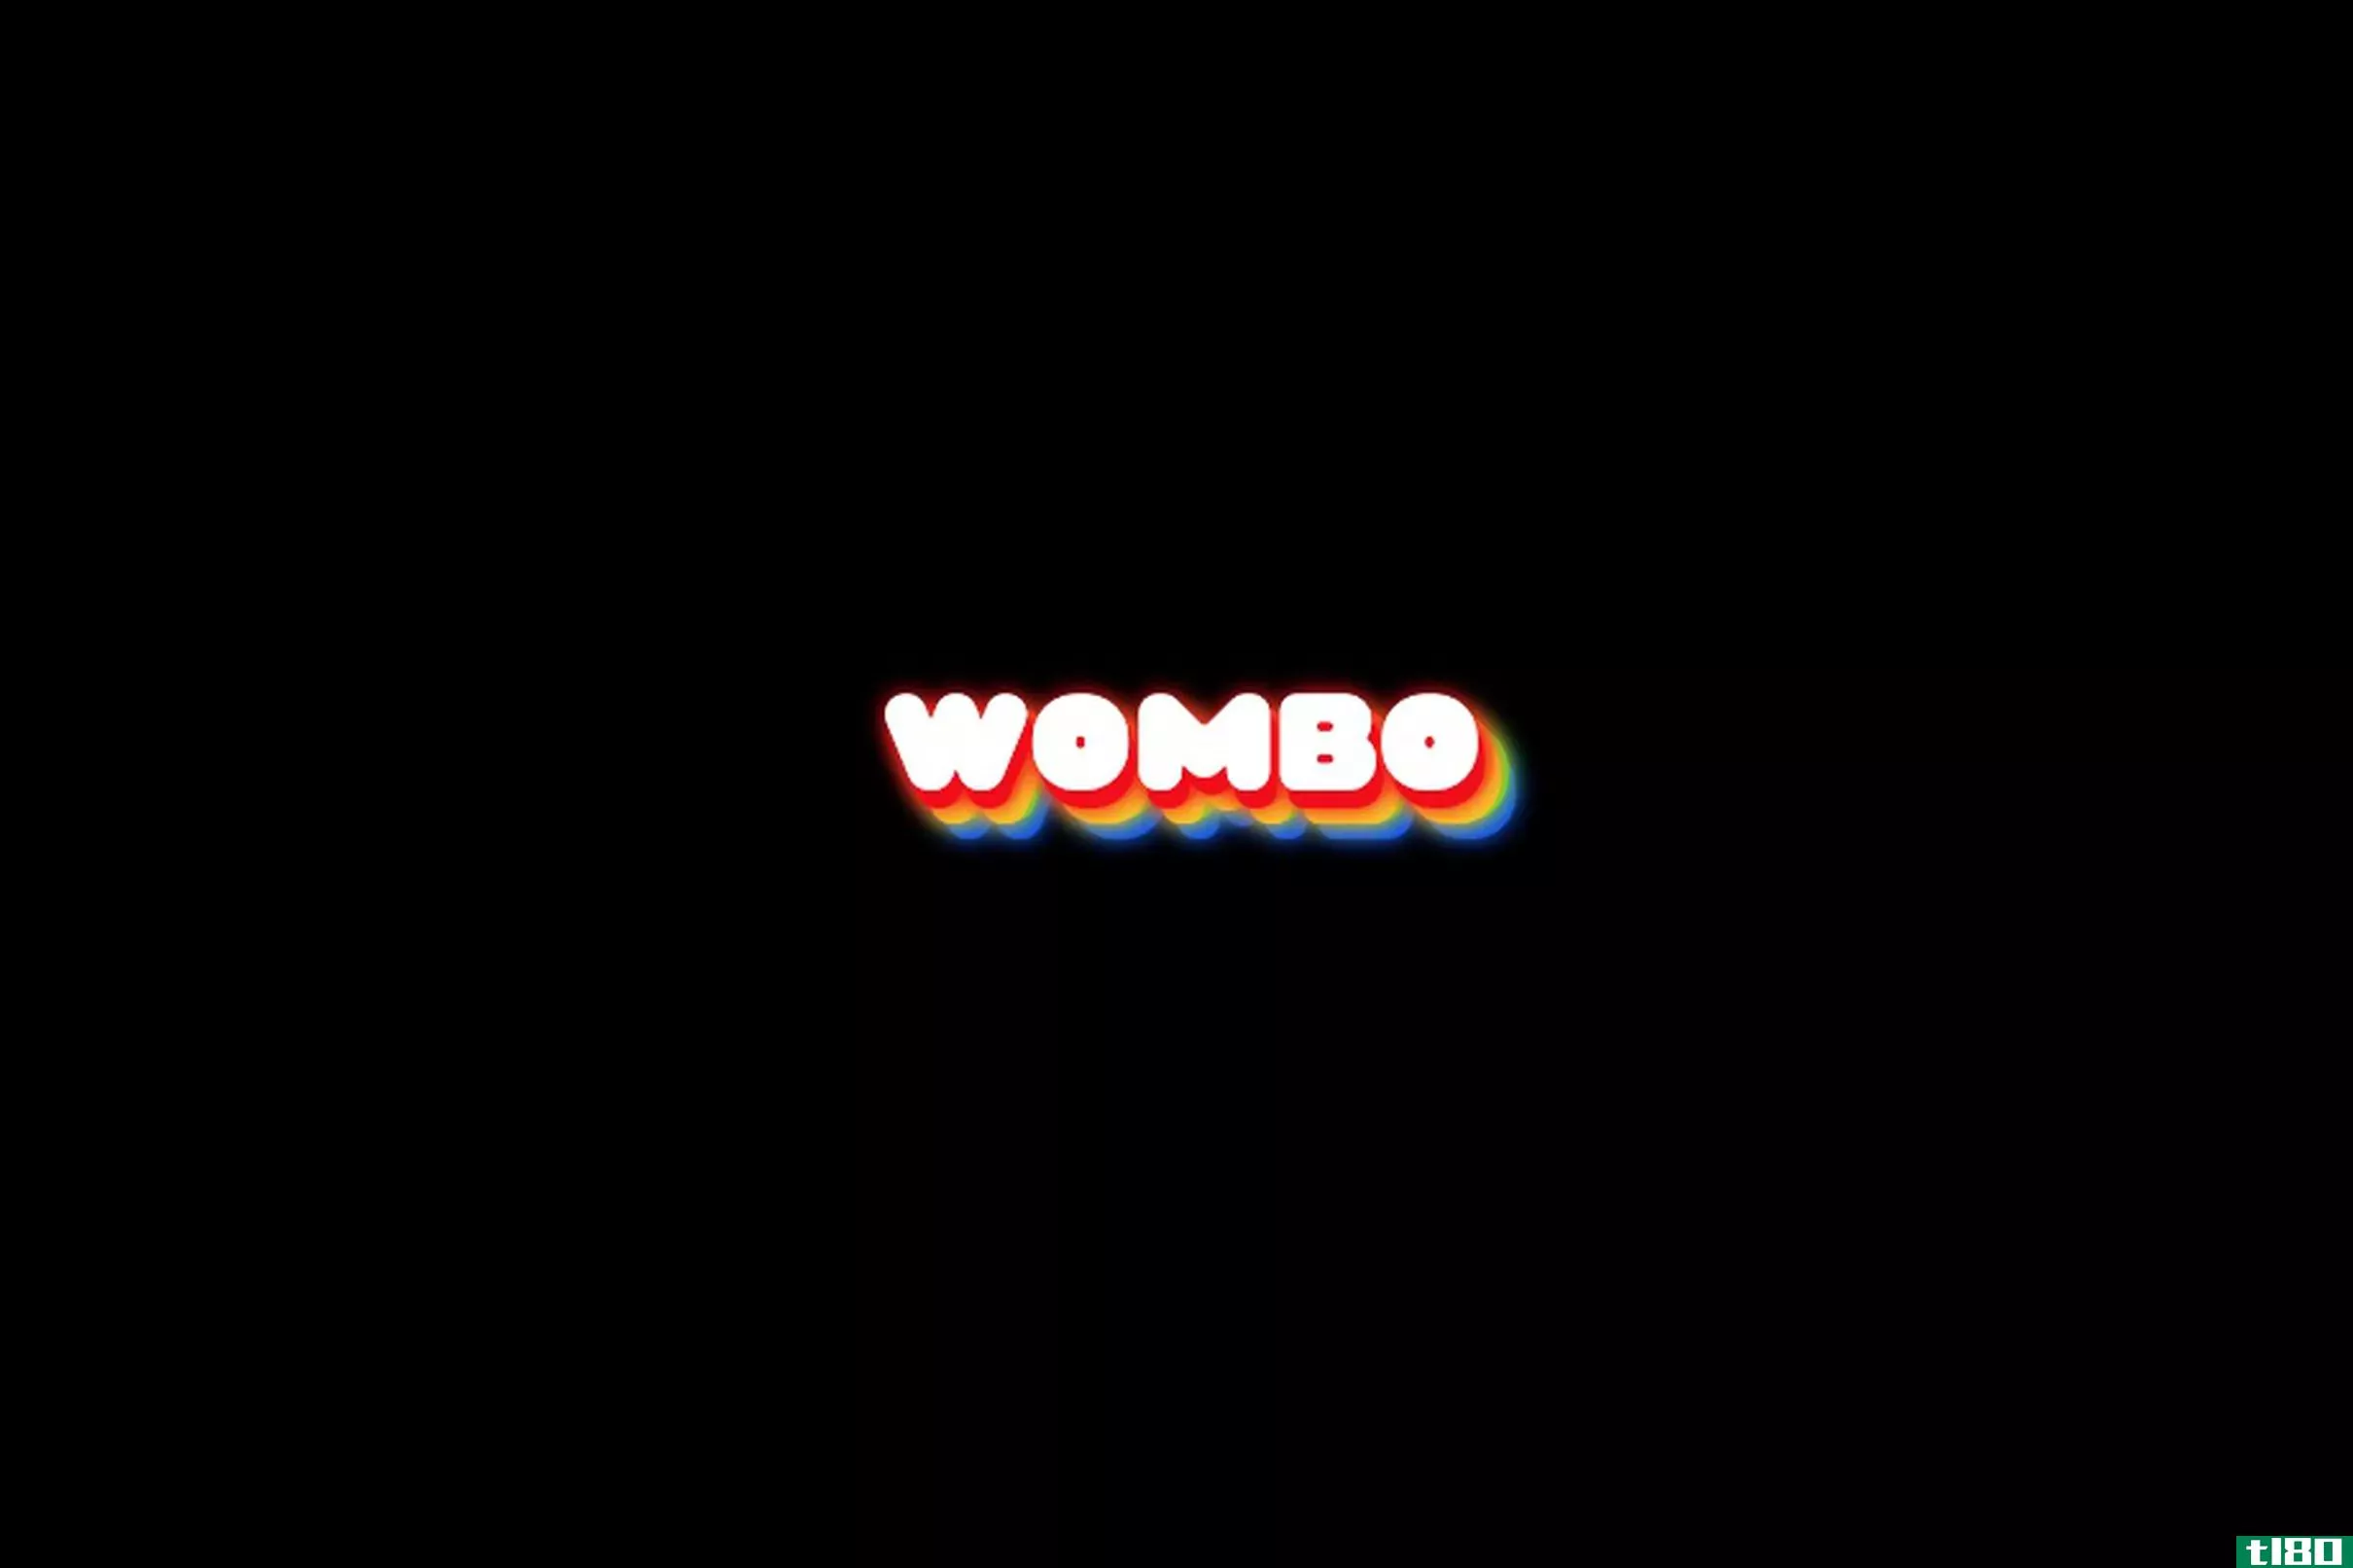 假唱应用程序wombo展示了深奥假唱的混乱、充满迷因的潜力